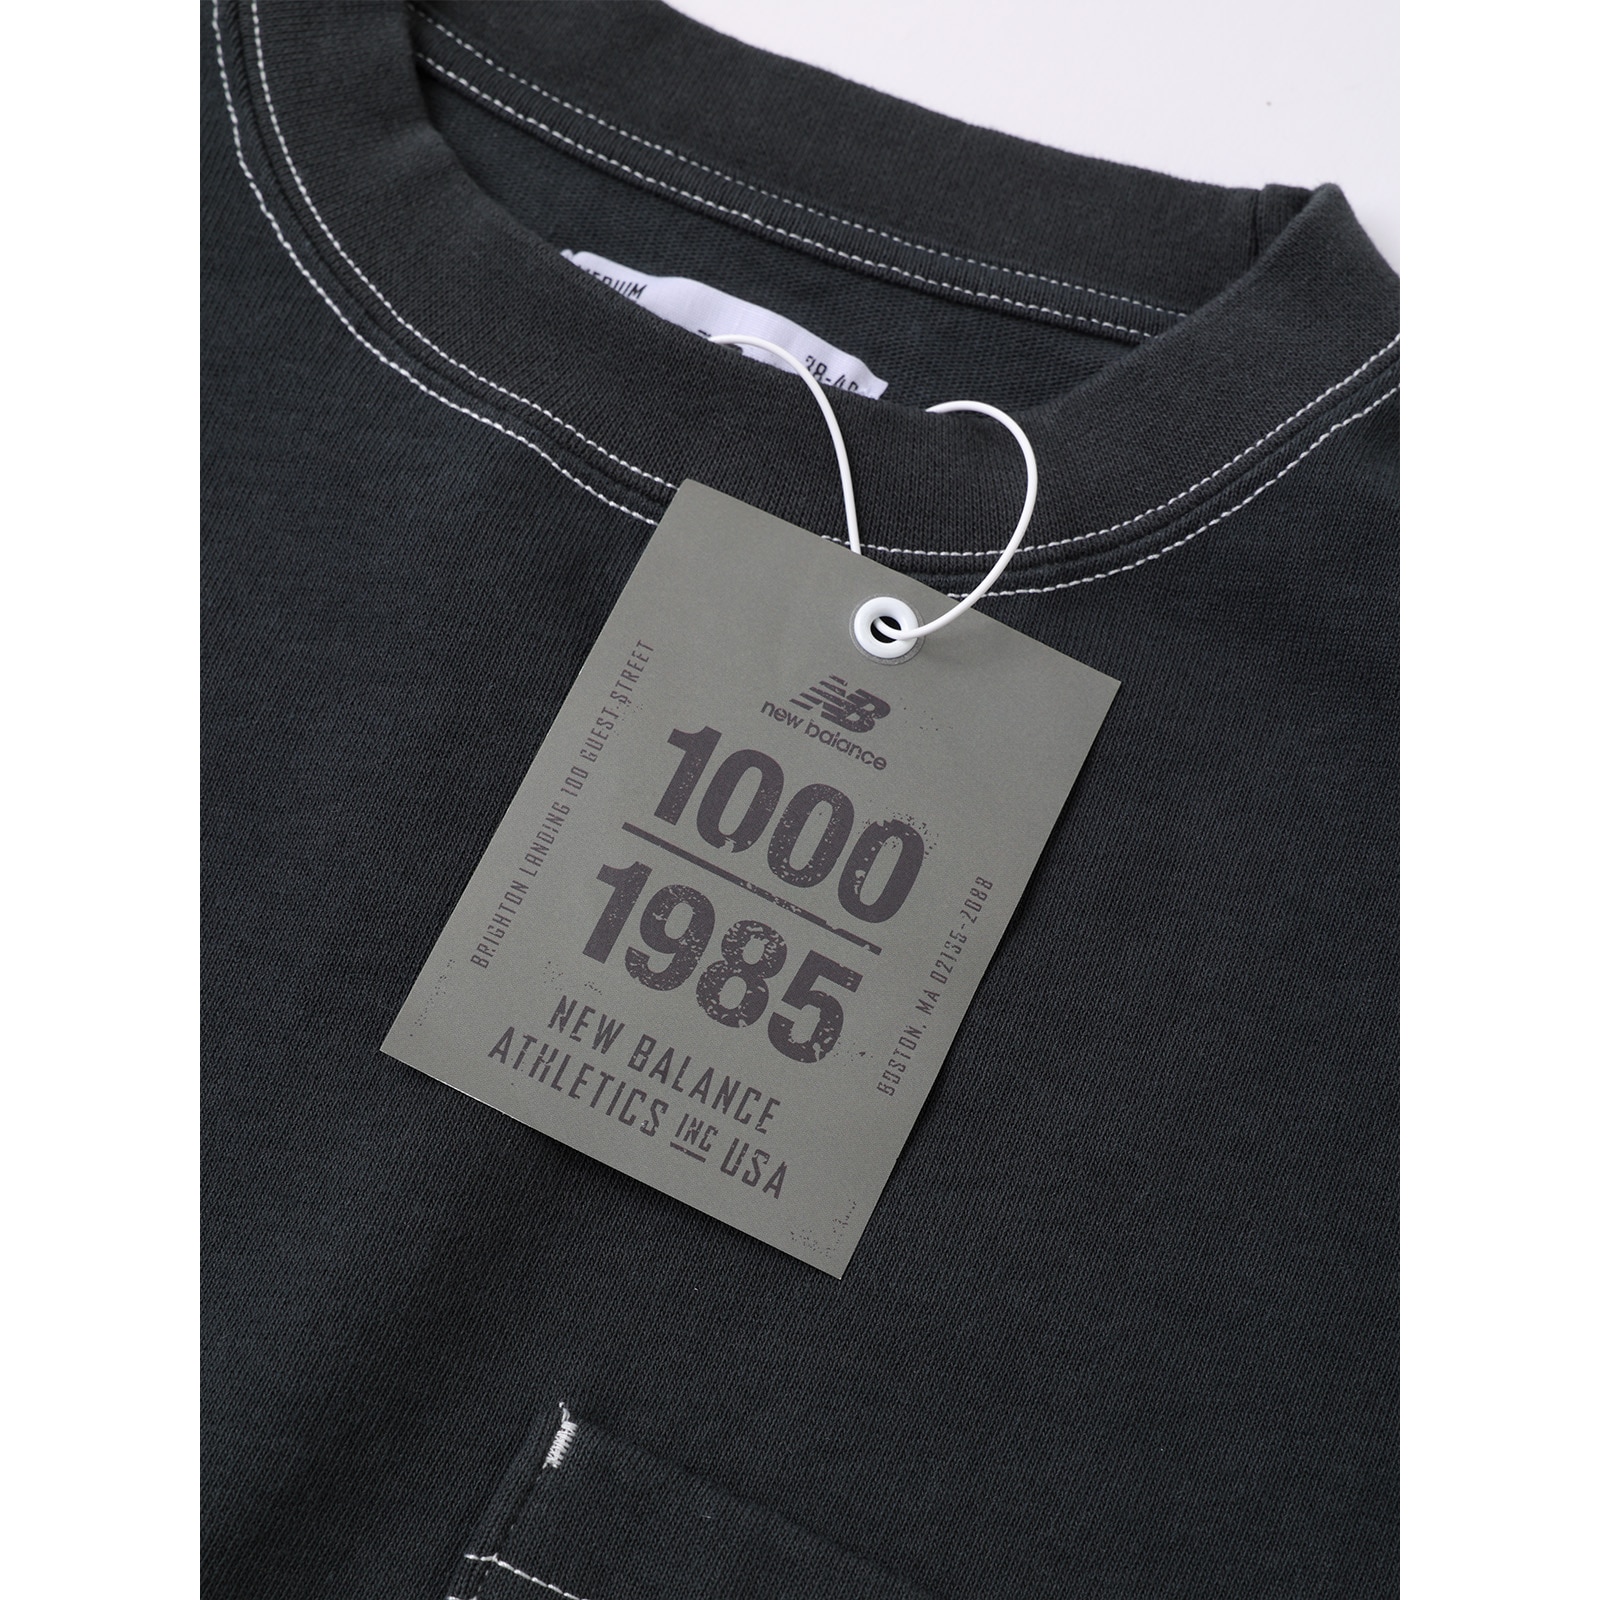 1000长袖T恤标准款